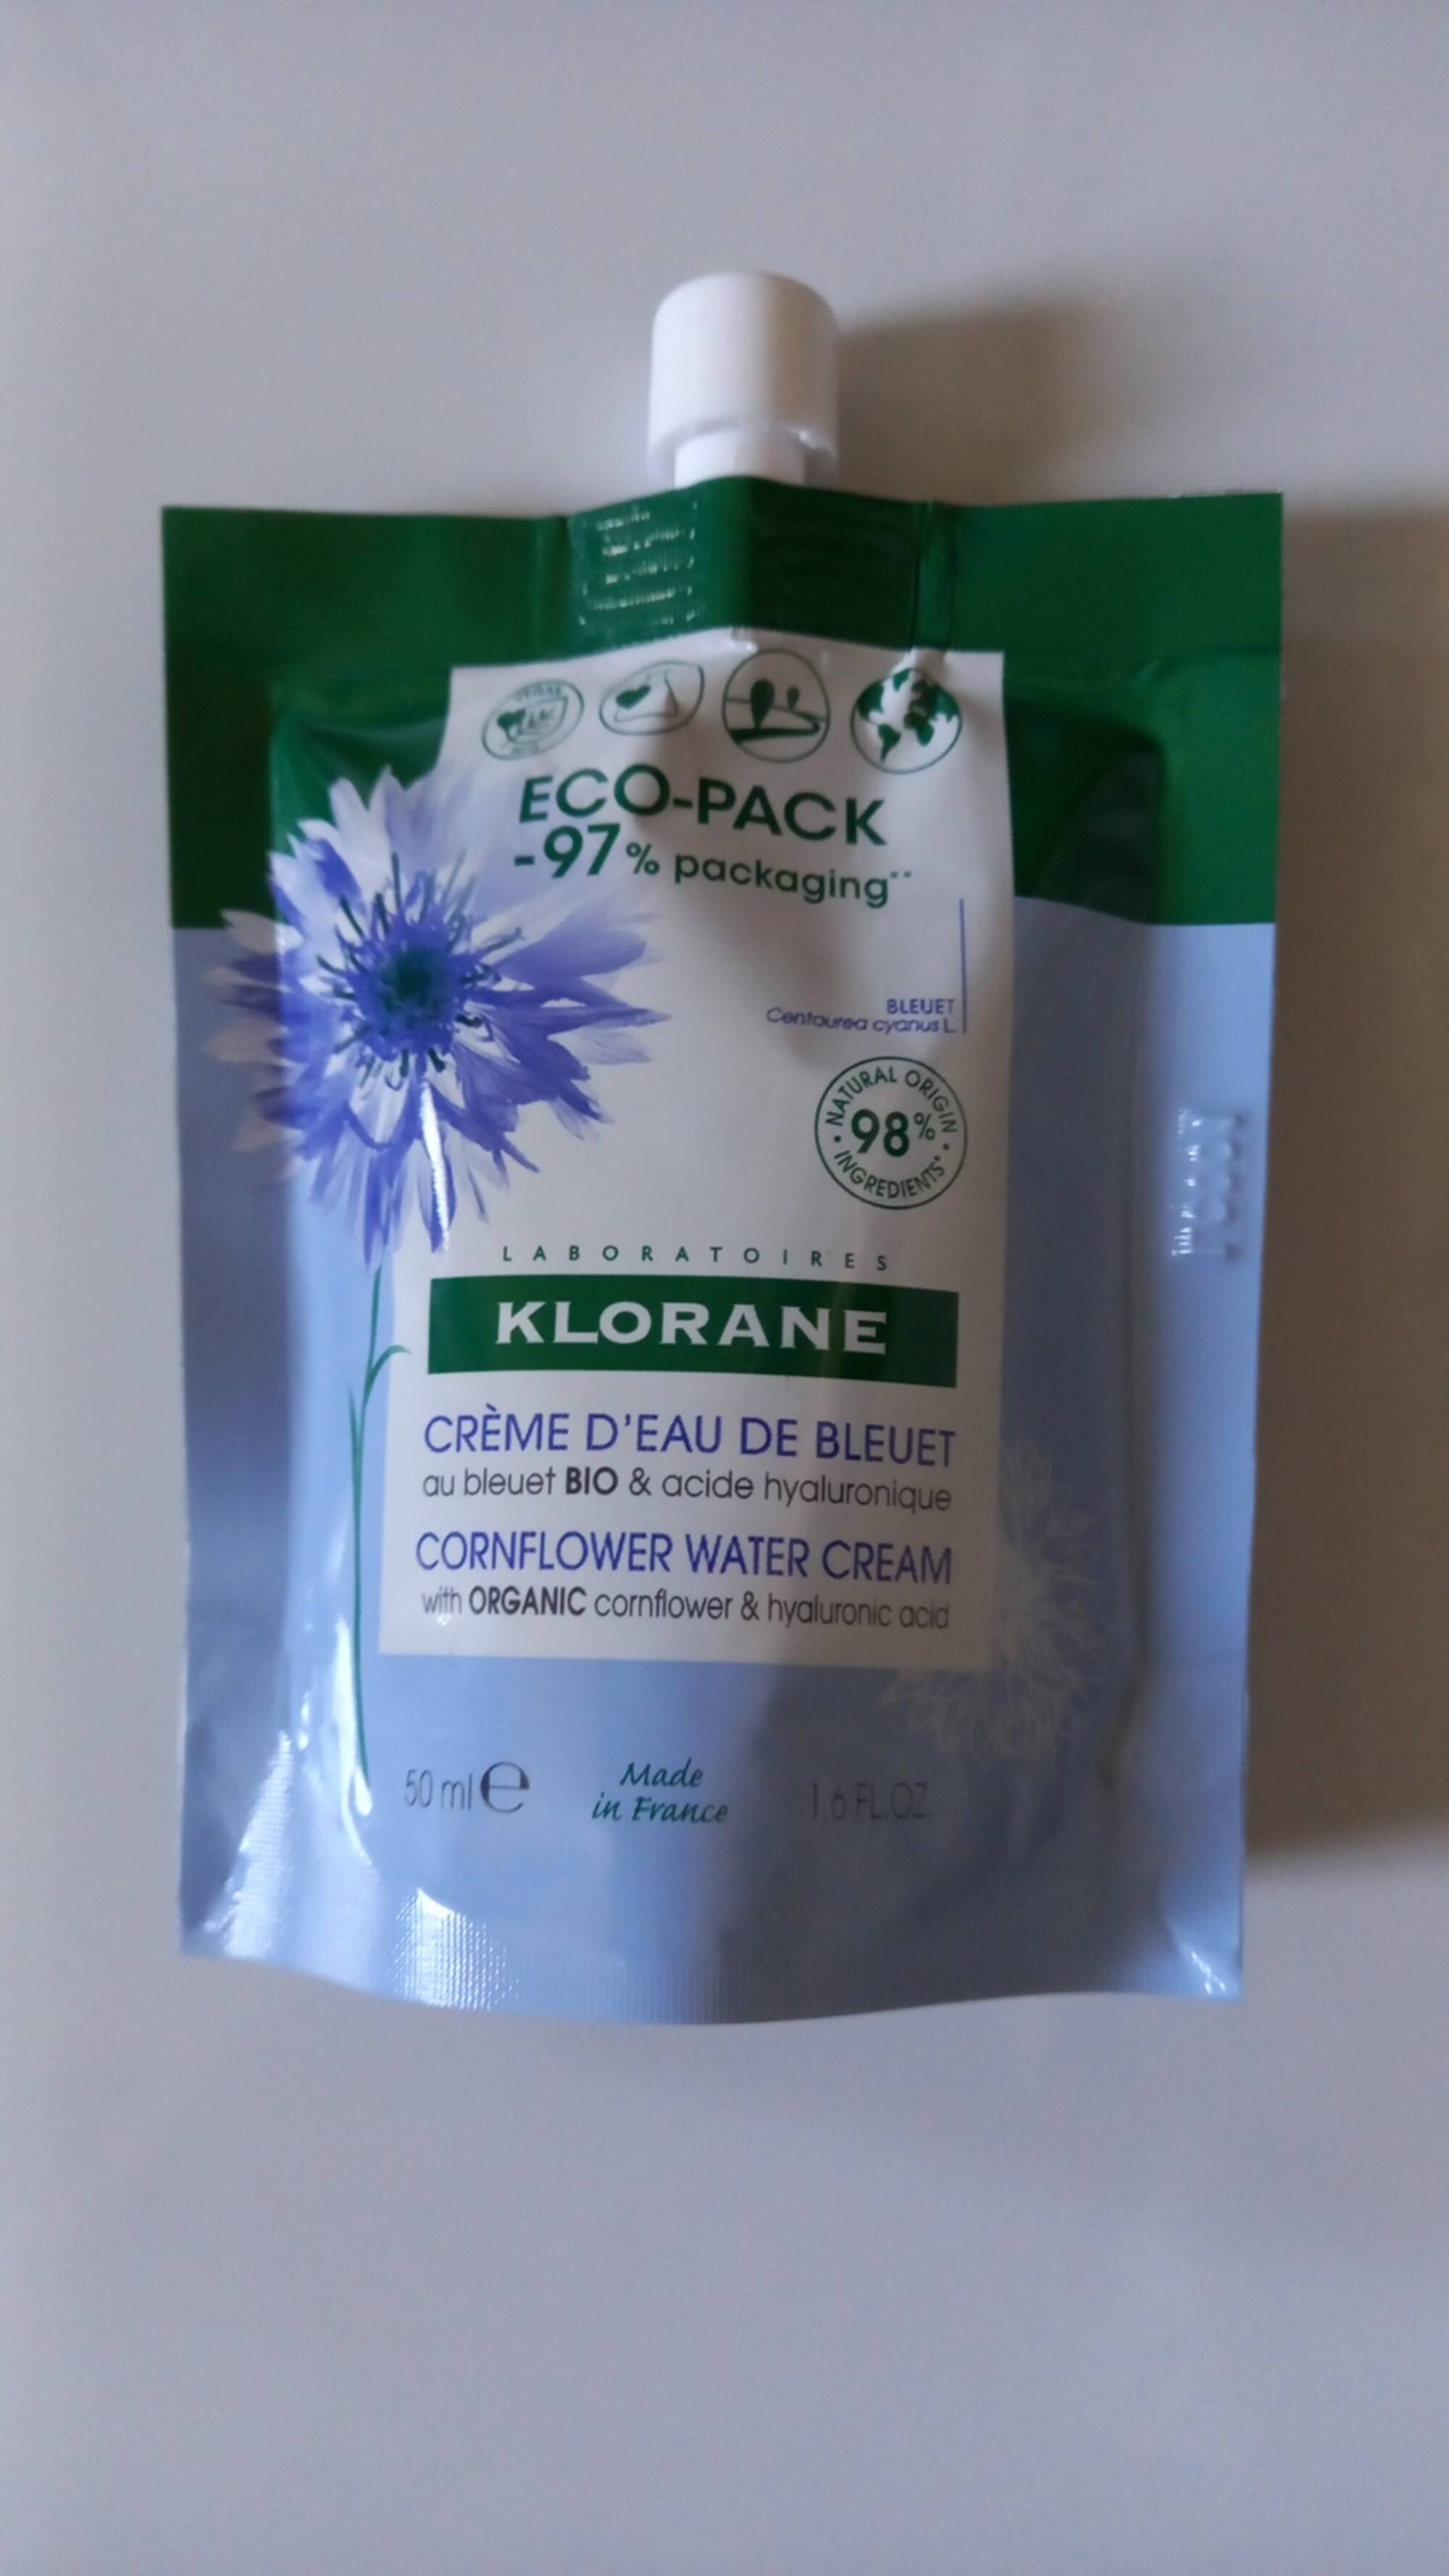 KLORANE - Crème d'eau de bleuet